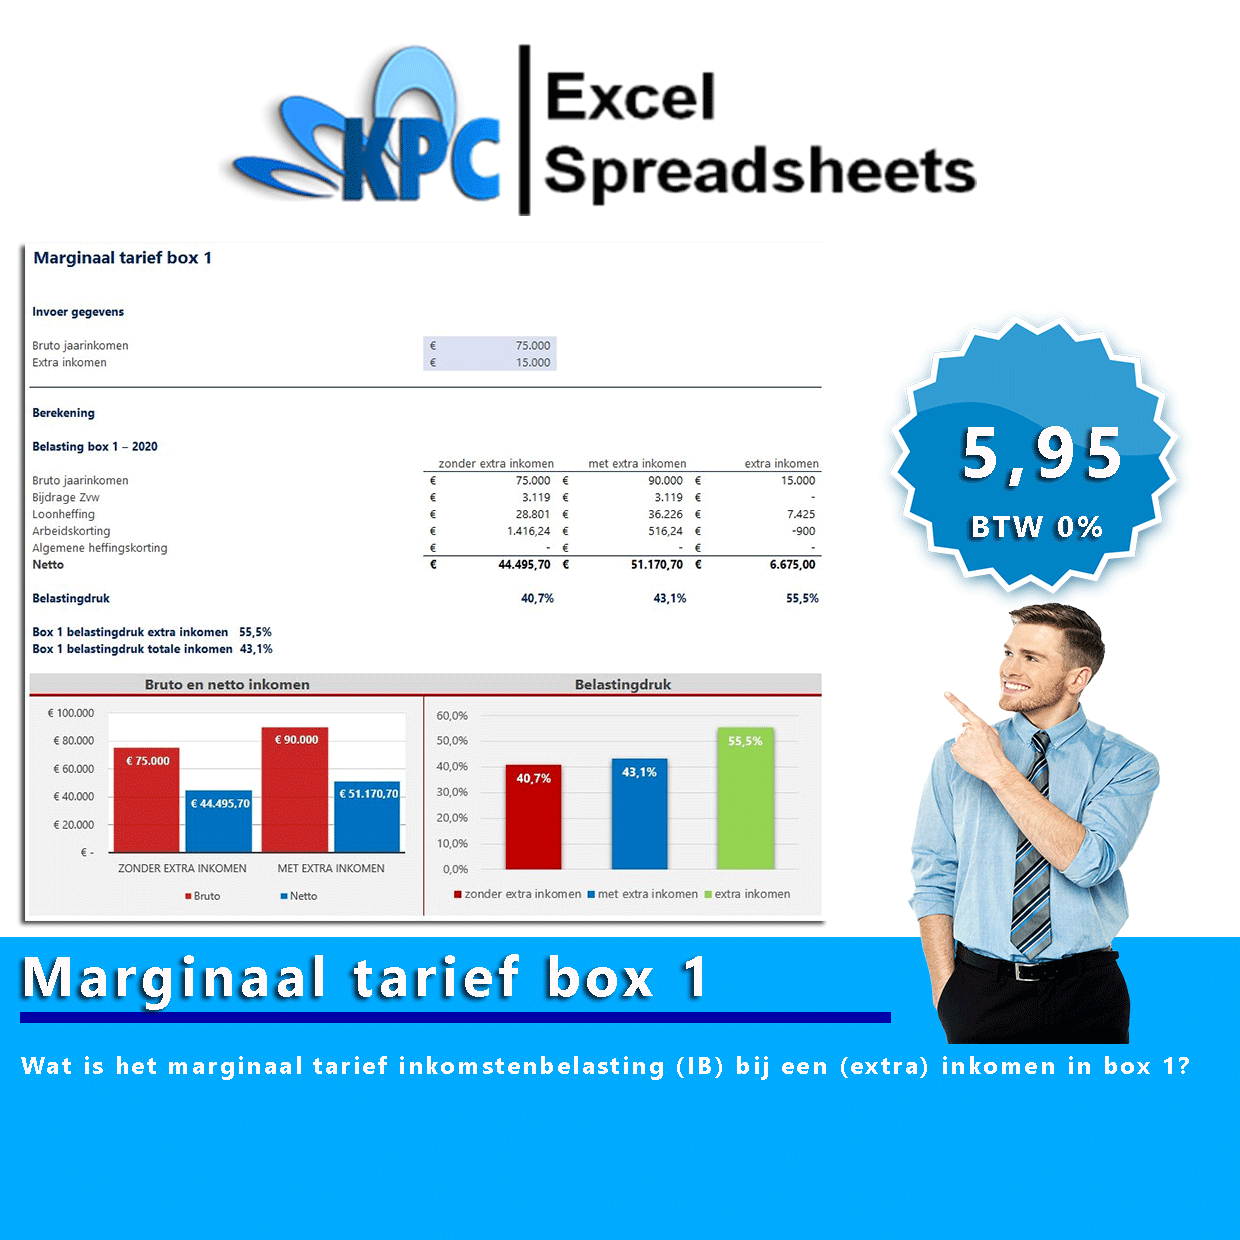 Marginaal tarief box 1